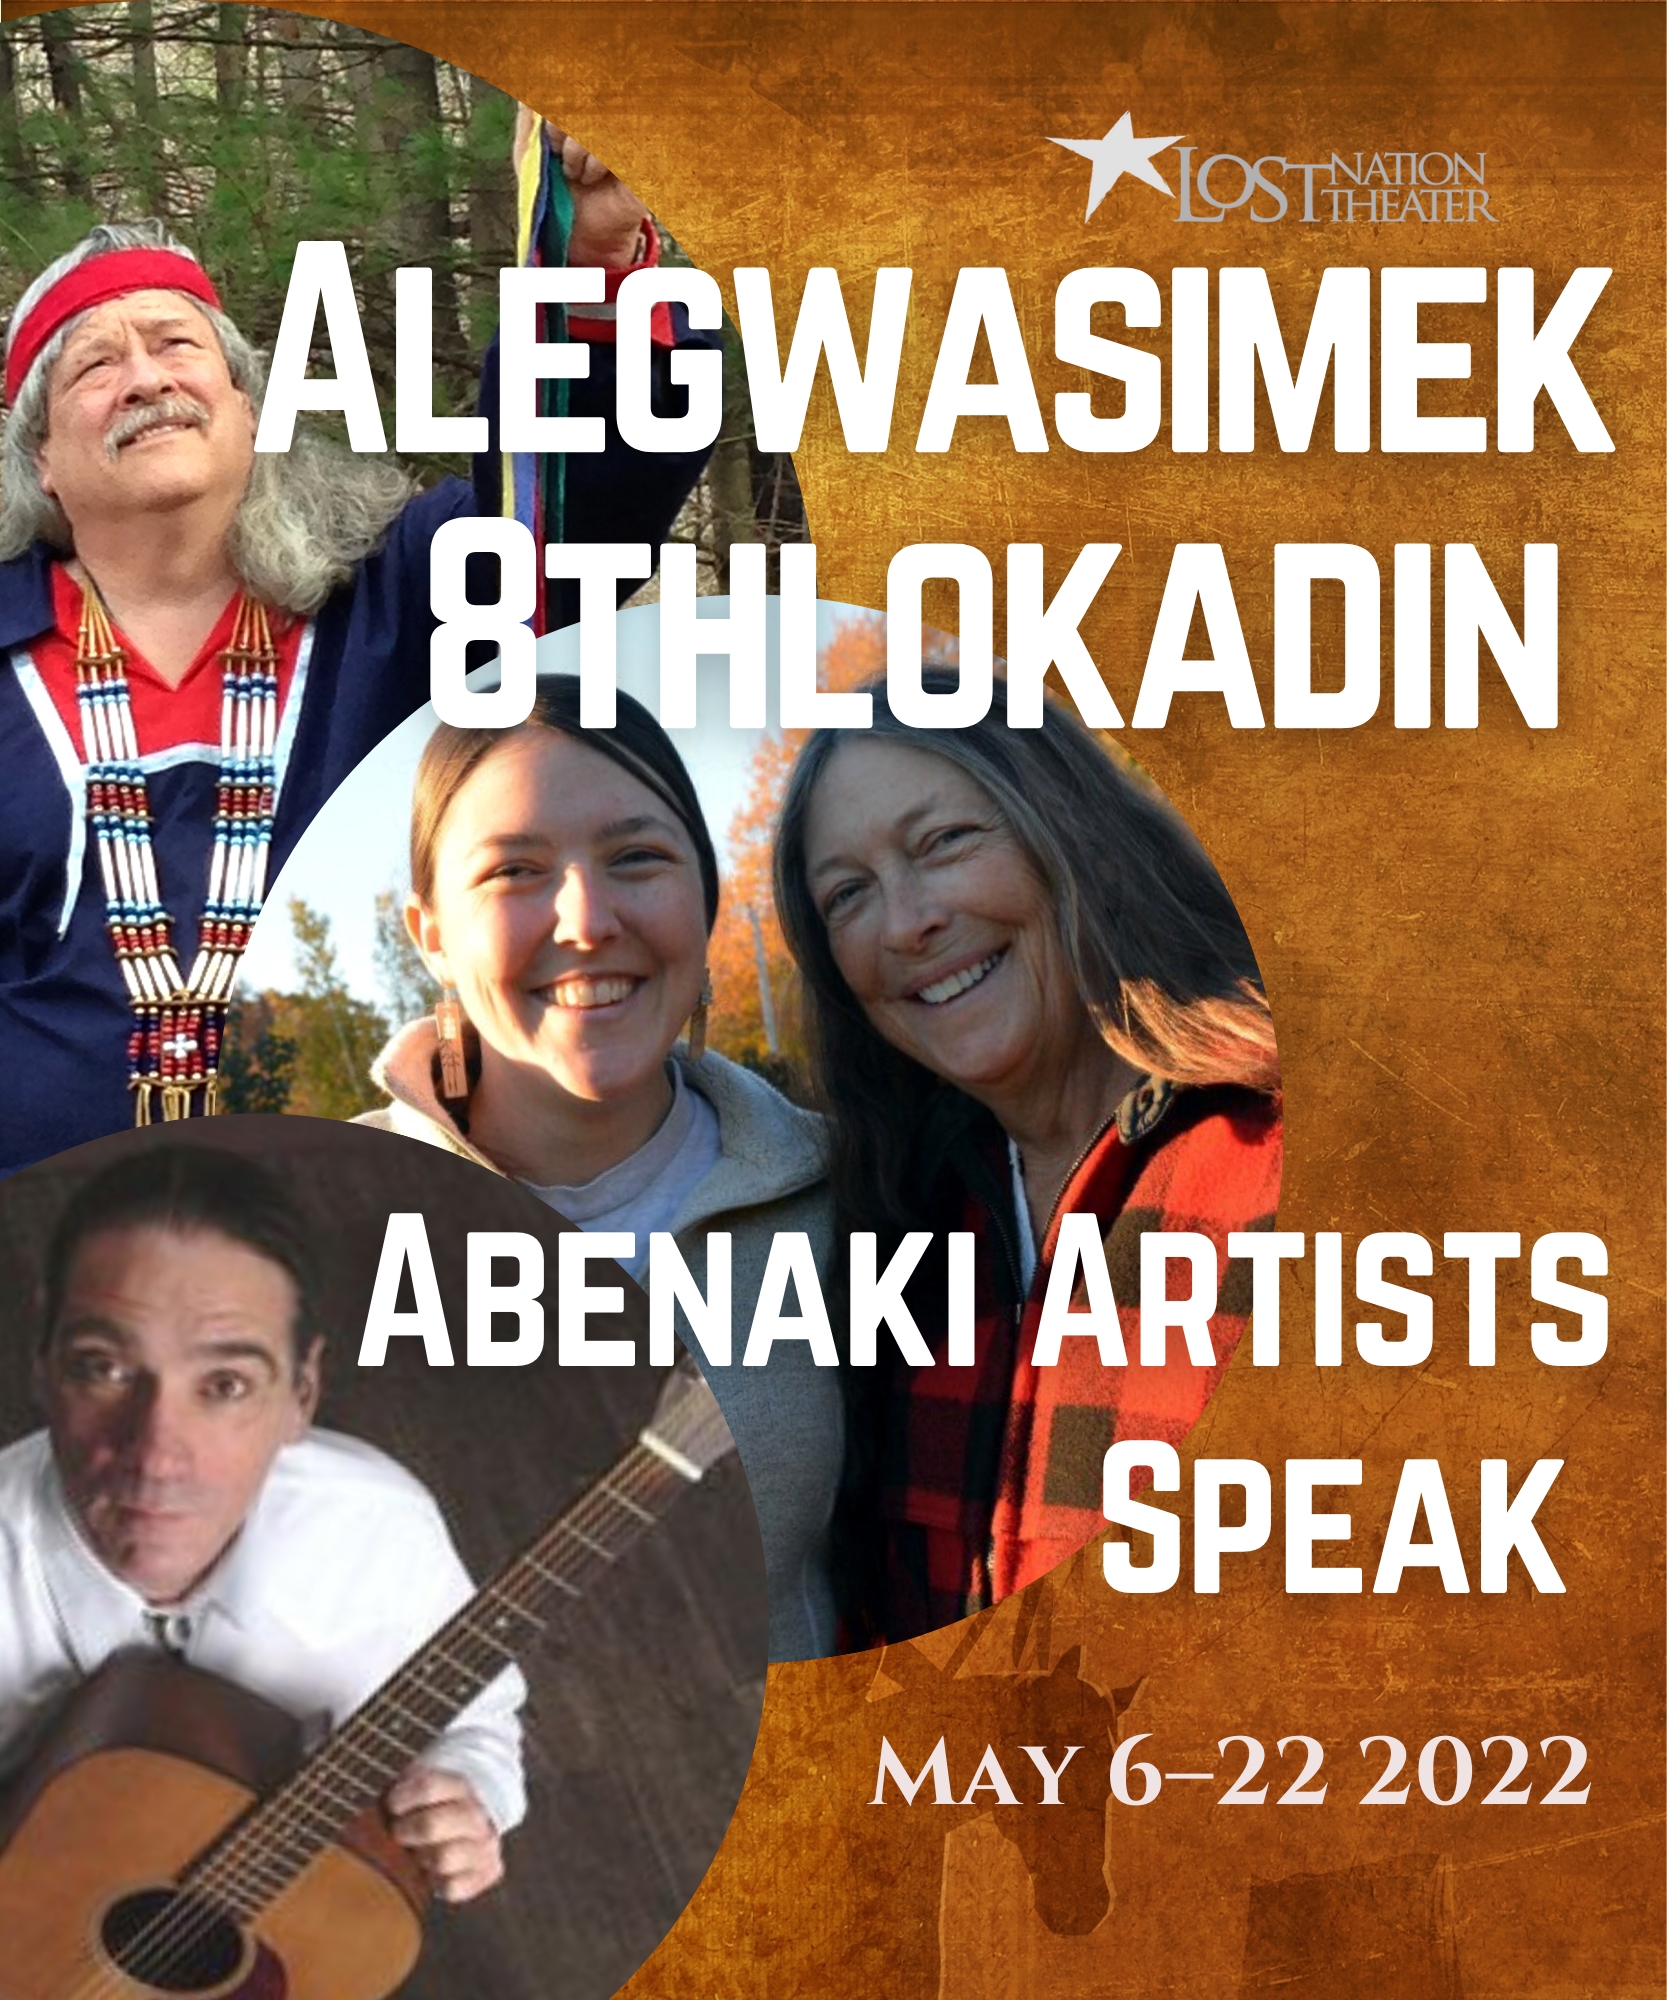 Alegwasimek 8thlokadin: Abenaki Artists Speak